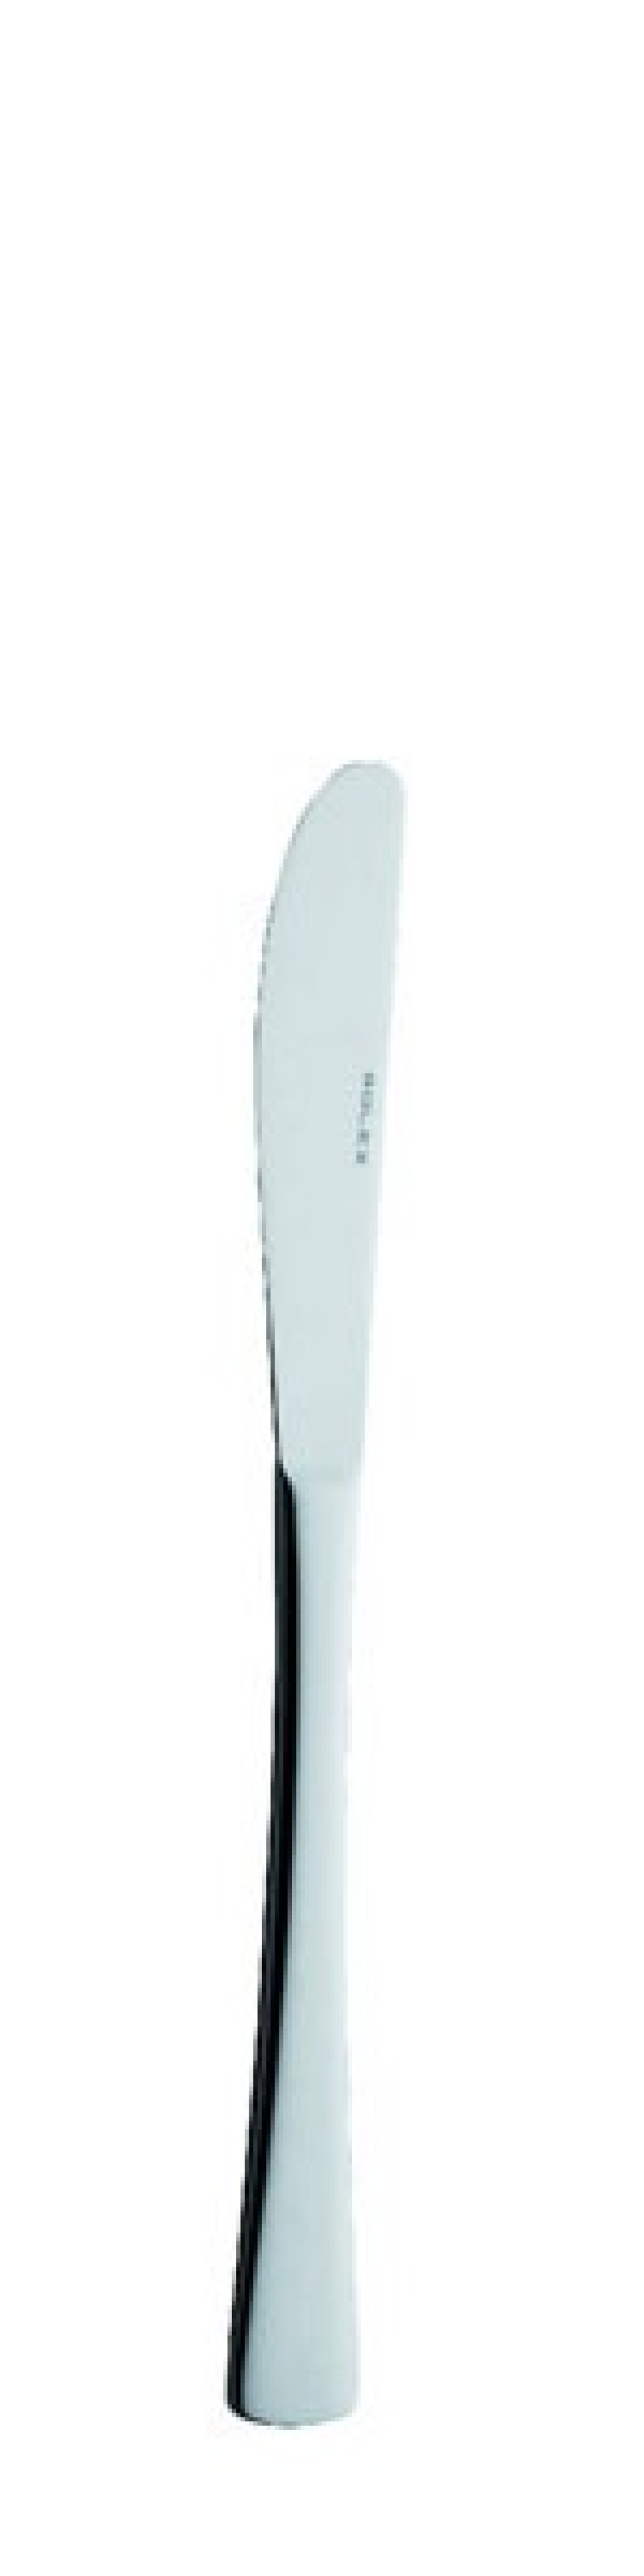 Nóż deserowy Karina 178 mm - Solex w grupie Nakrycie stołu / Sztućce / Noże w The Kitchen Lab (1284-21429)